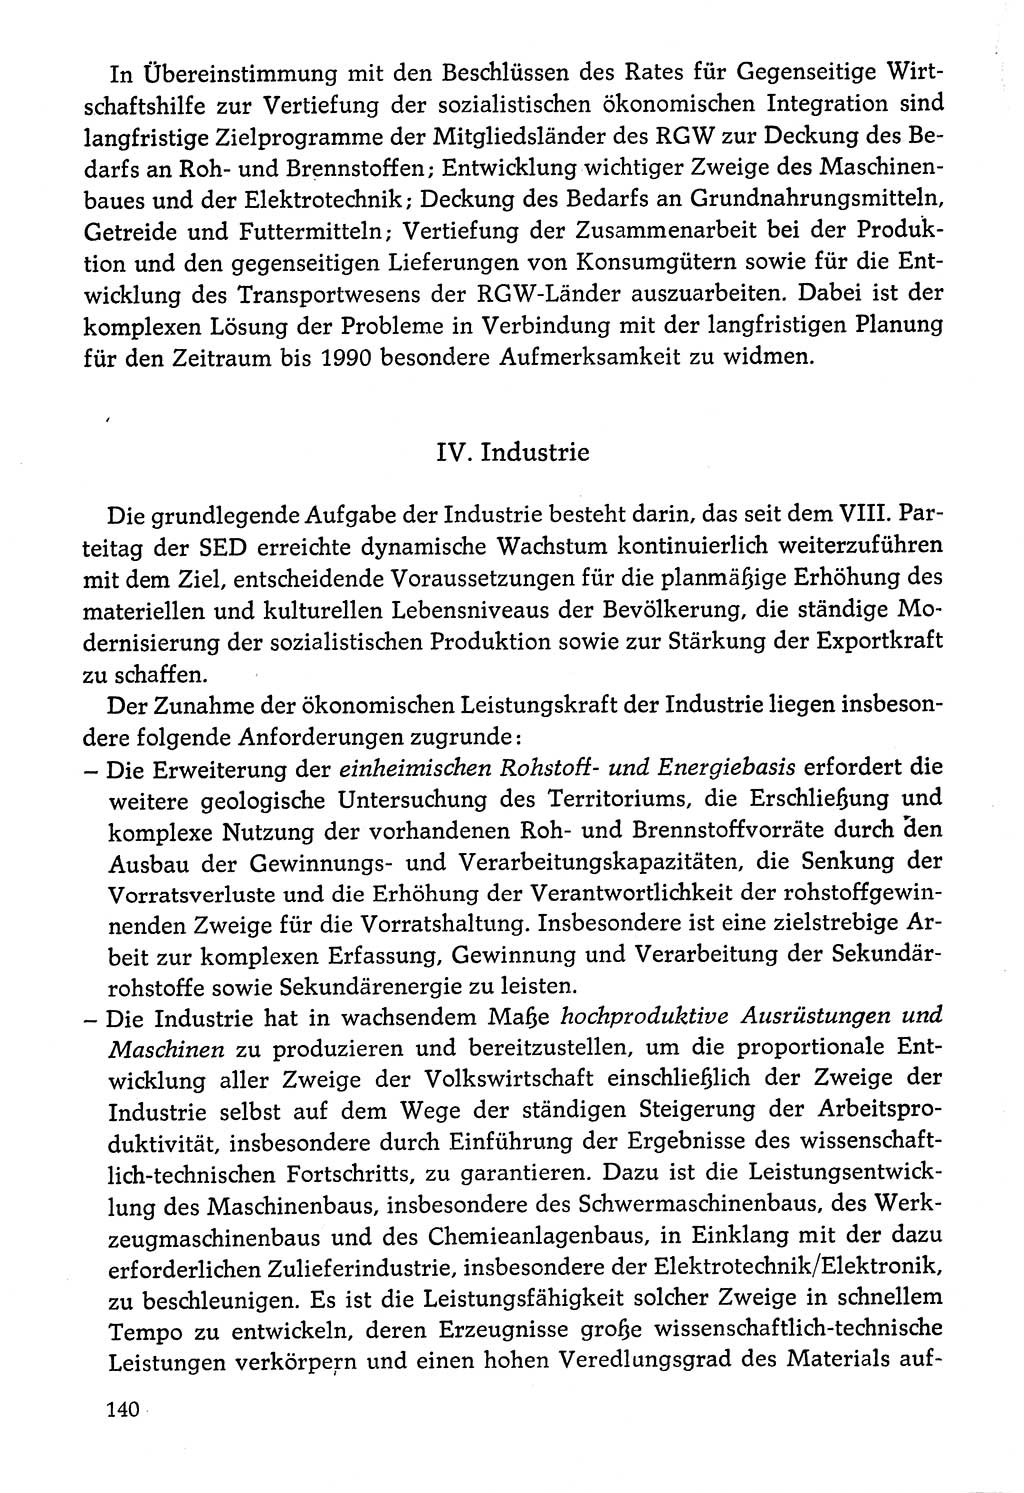 Dokumente der Sozialistischen Einheitspartei Deutschlands (SED) [Deutsche Demokratische Republik (DDR)] 1976-1977, Seite 140 (Dok. SED DDR 1976-1977, S. 140)